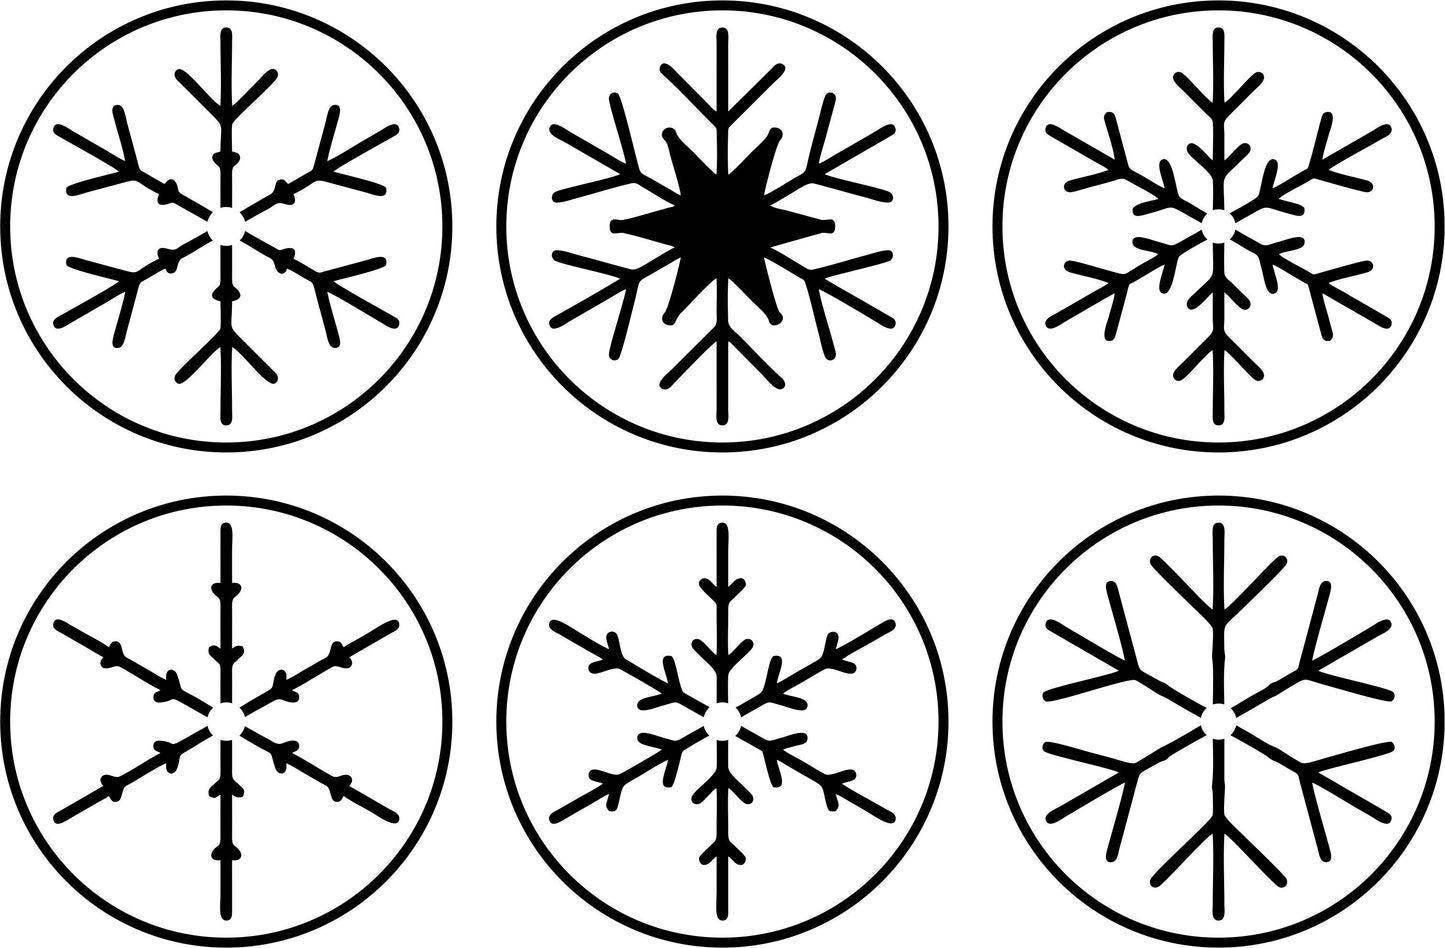 Mini Snowflakes